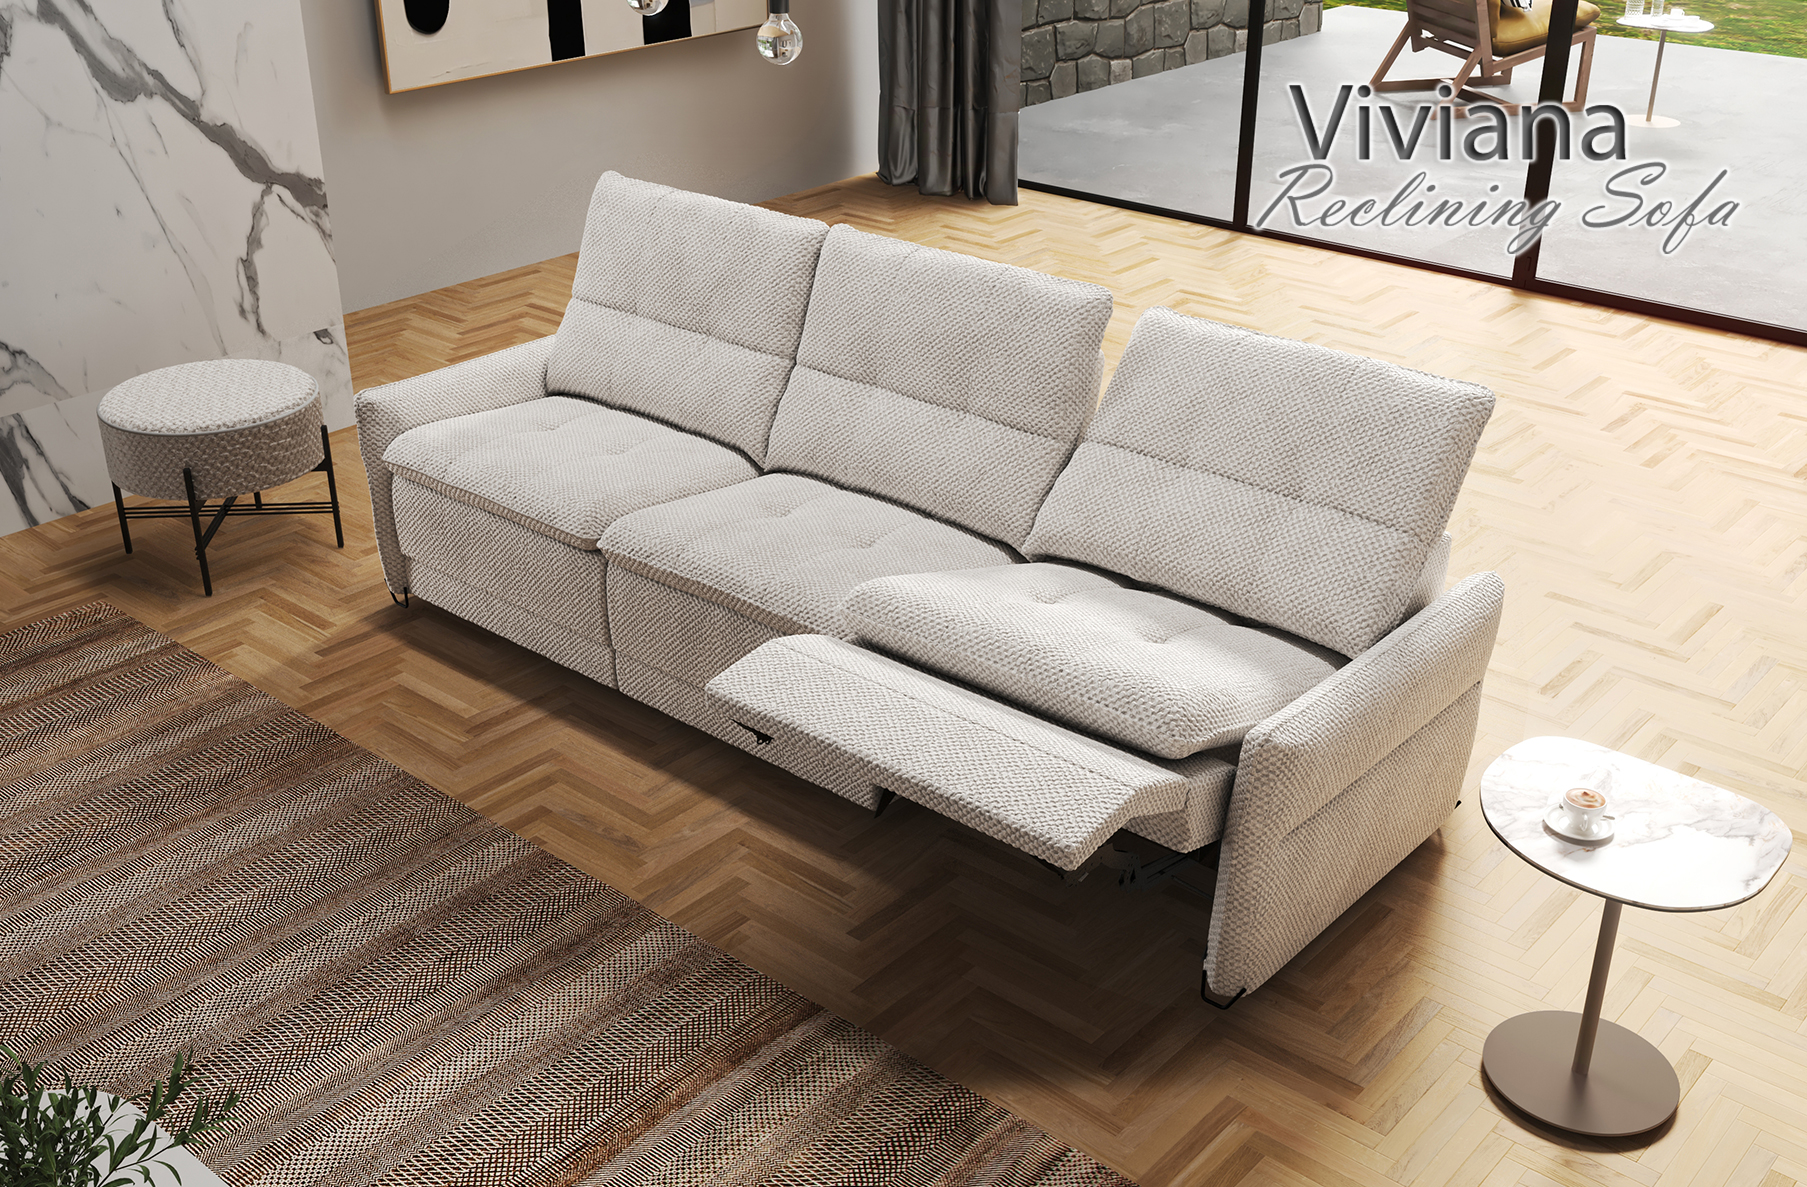 Viviana Sectional Sofa, Cheap